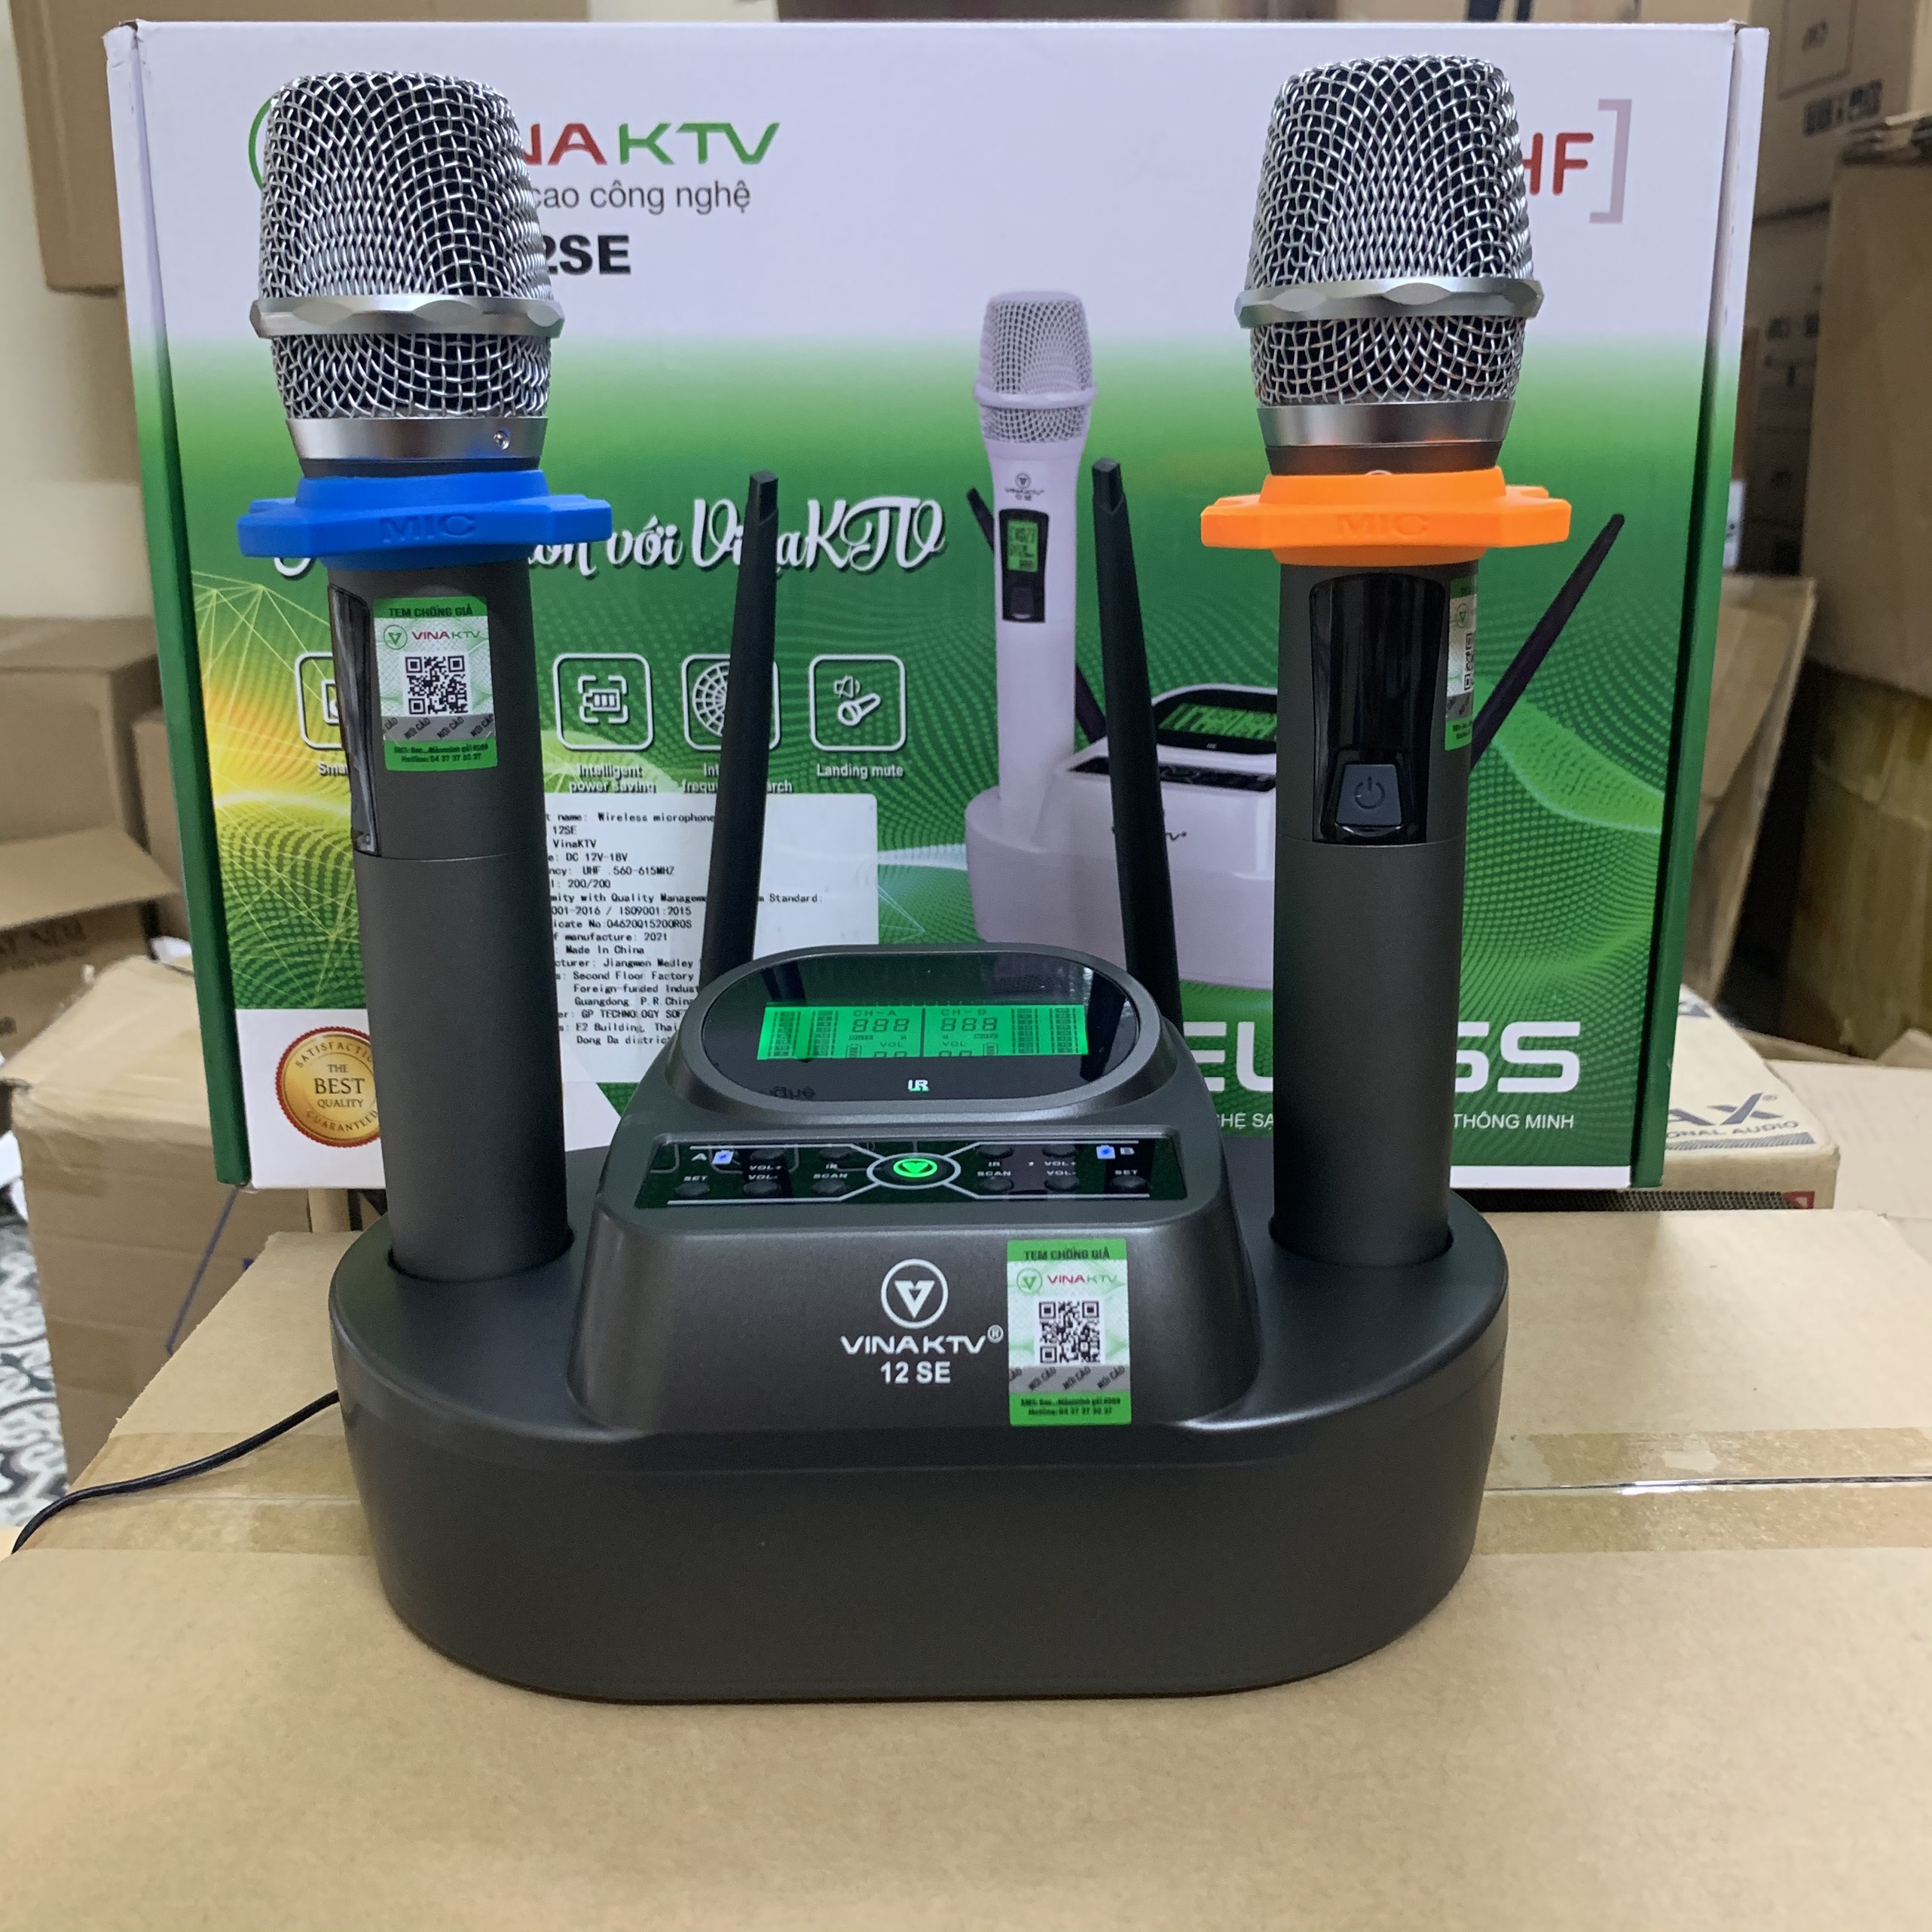 Micro karaoke không dây cao cấp VinaKTV 12SE - Sử dụng pin sạc, có cảm biến tự ngắt, gia tốc - Hát nhẹ, bay, chống hú tốt - Hàng chính hãng